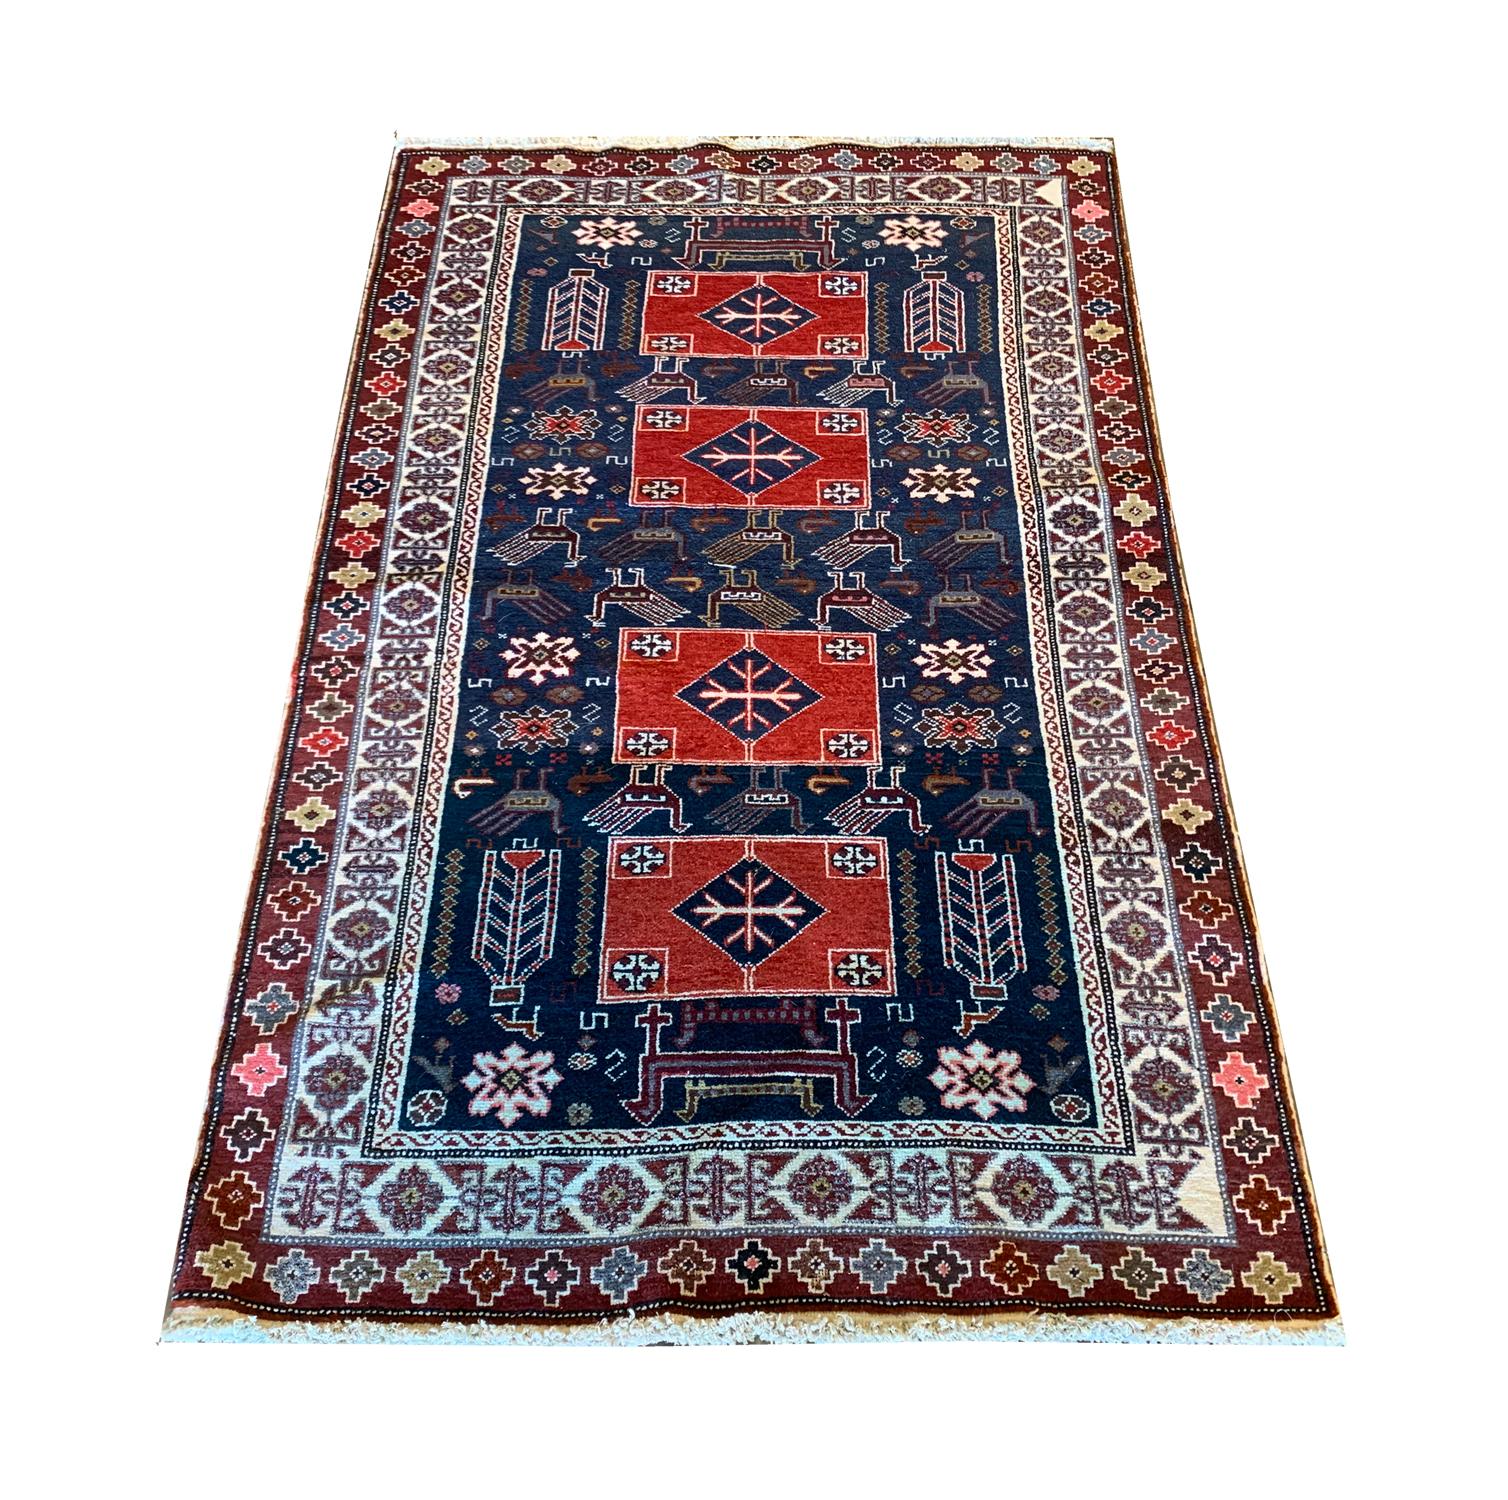 Dieser feine Wollteppich ist ein hervorragendes Beispiel für antike kaukasische Teppiche. In den 1880er Jahren von Hand gewebt und mit einem kühnen Design versehen. Das zentrale Muster wurde auf einem tiefblauen Feld gewebt, das von auffälligen